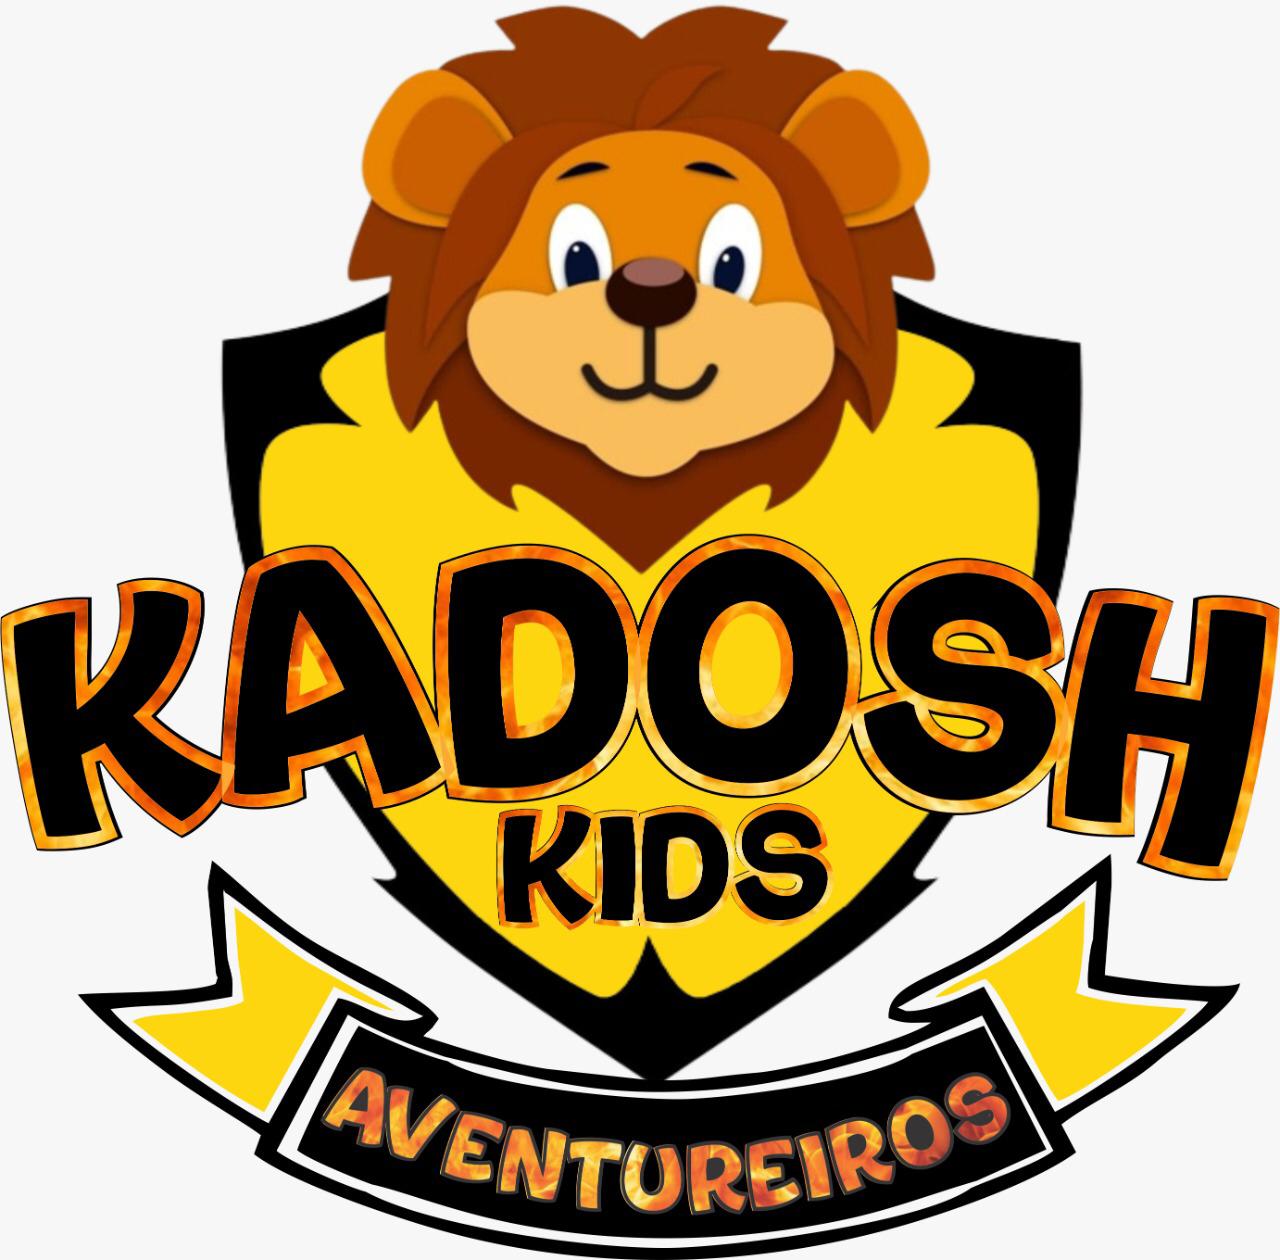 Kadosh Kids